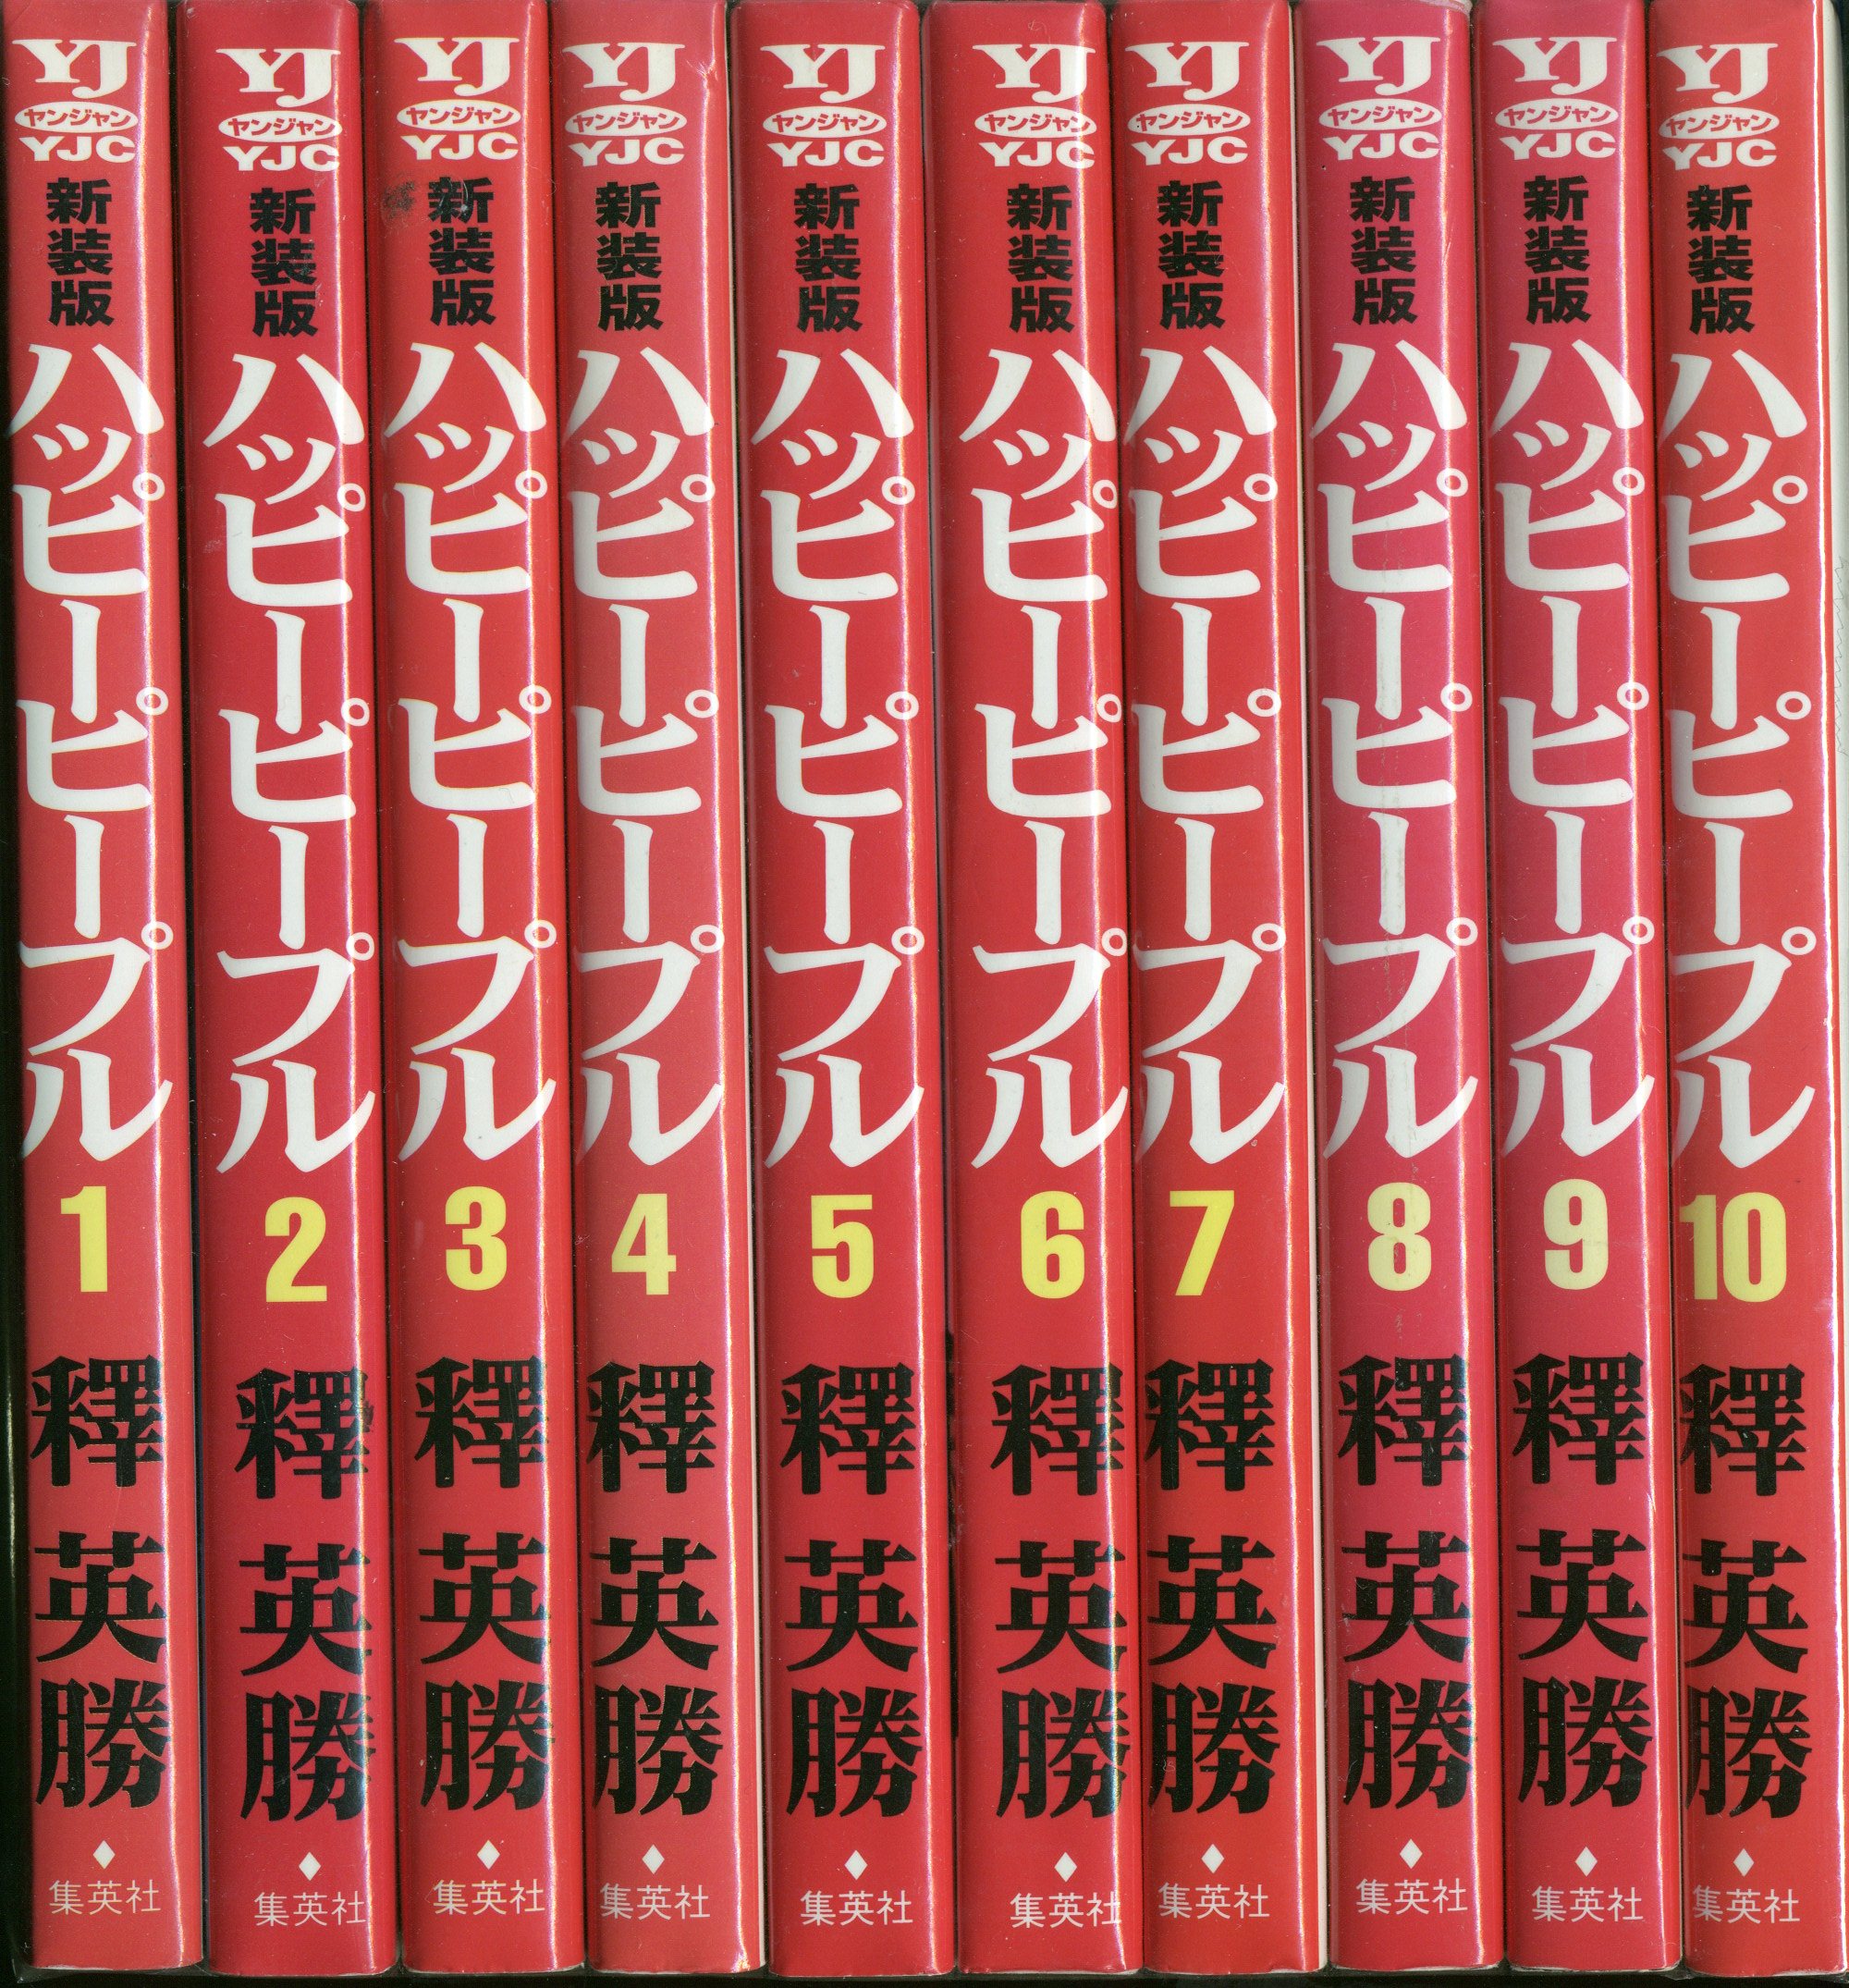 ②全巻■「ハッピーピープル」全10巻「新」全3巻+「モンキーピープル」全5巻+1